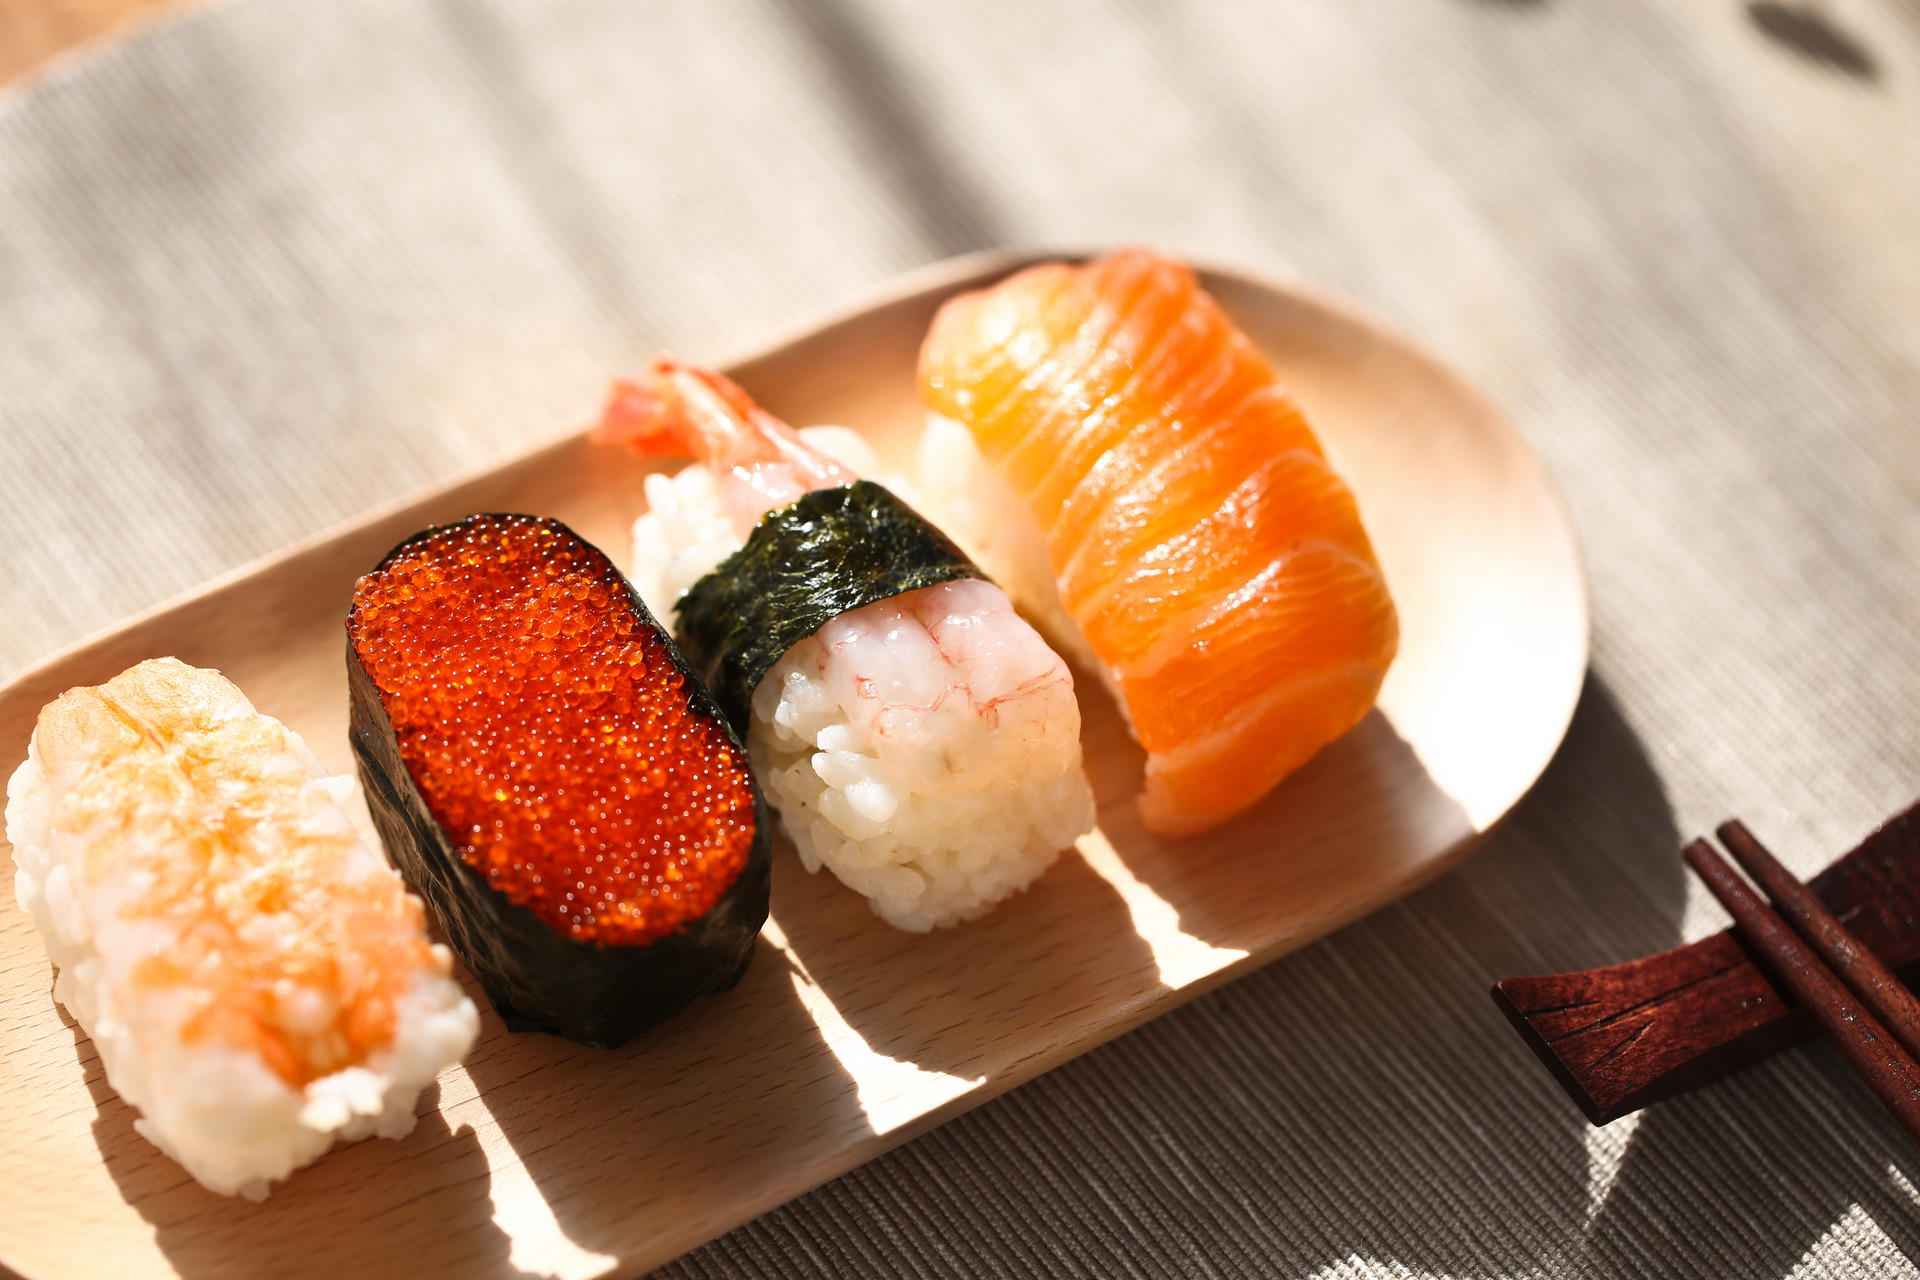 寿司上面的橙色颗粒是什么